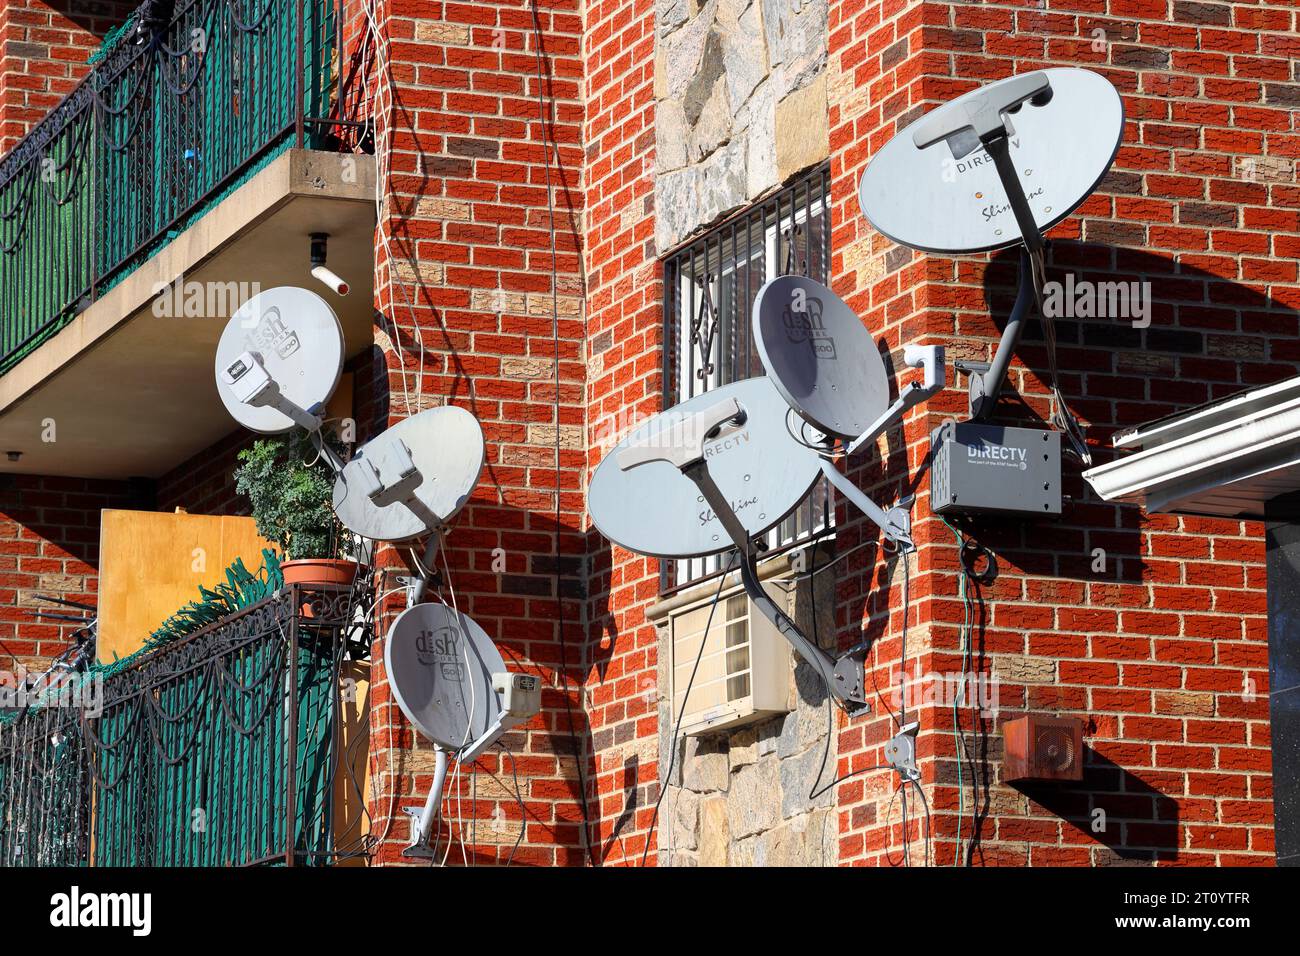 Mehrere Satellitenfernsehschüsseln auf der Seite eines Wohnhauses in NYC. Dish Network, DirecTV Digital Satellite Broadcast Antennen. Stockfoto